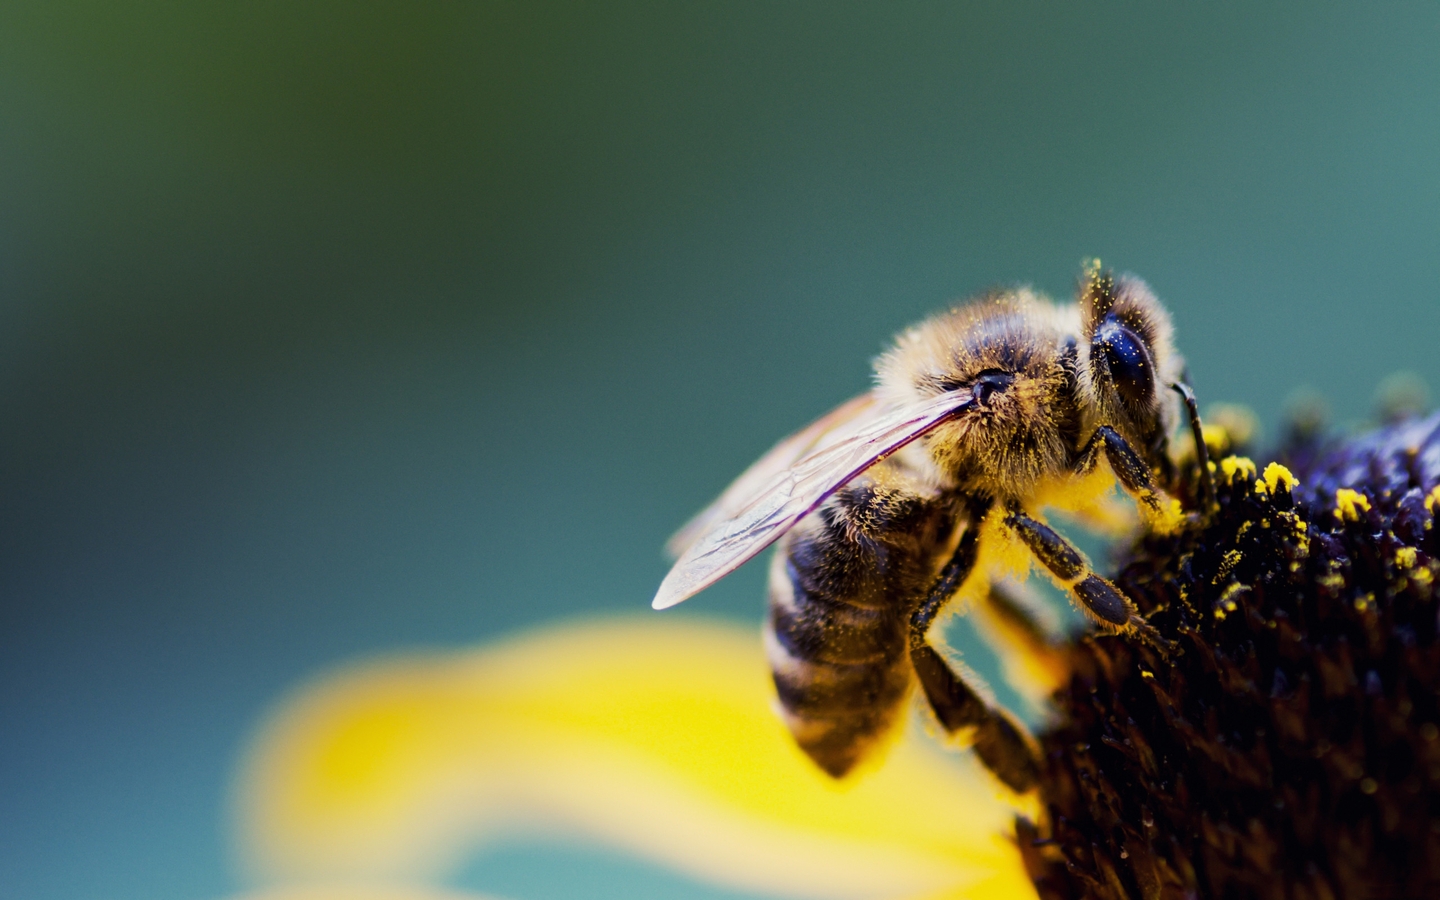 Картинка: Пчела, крылья, сидит, опыление, пыльца, цветок, размытость, макросъёмка